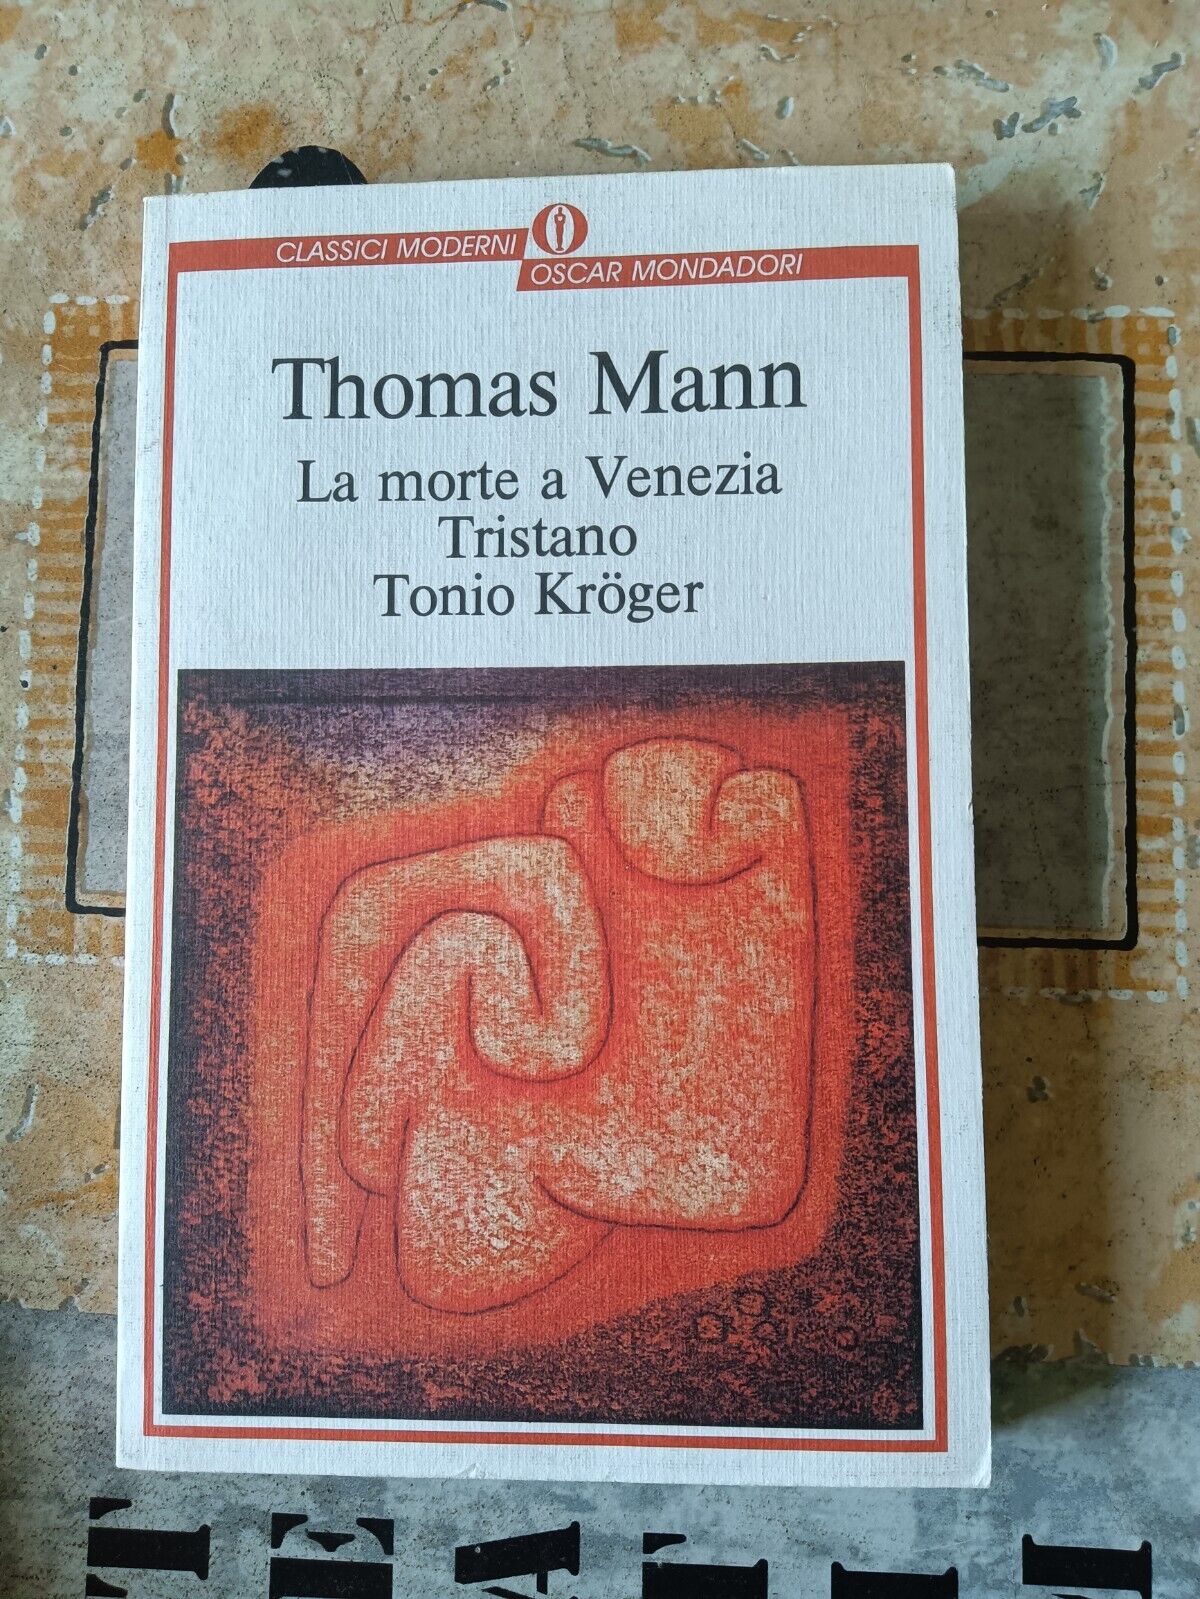 La morte a Venezia, Tristano, Tonio Kroger | Thomas Mann - Mondadori